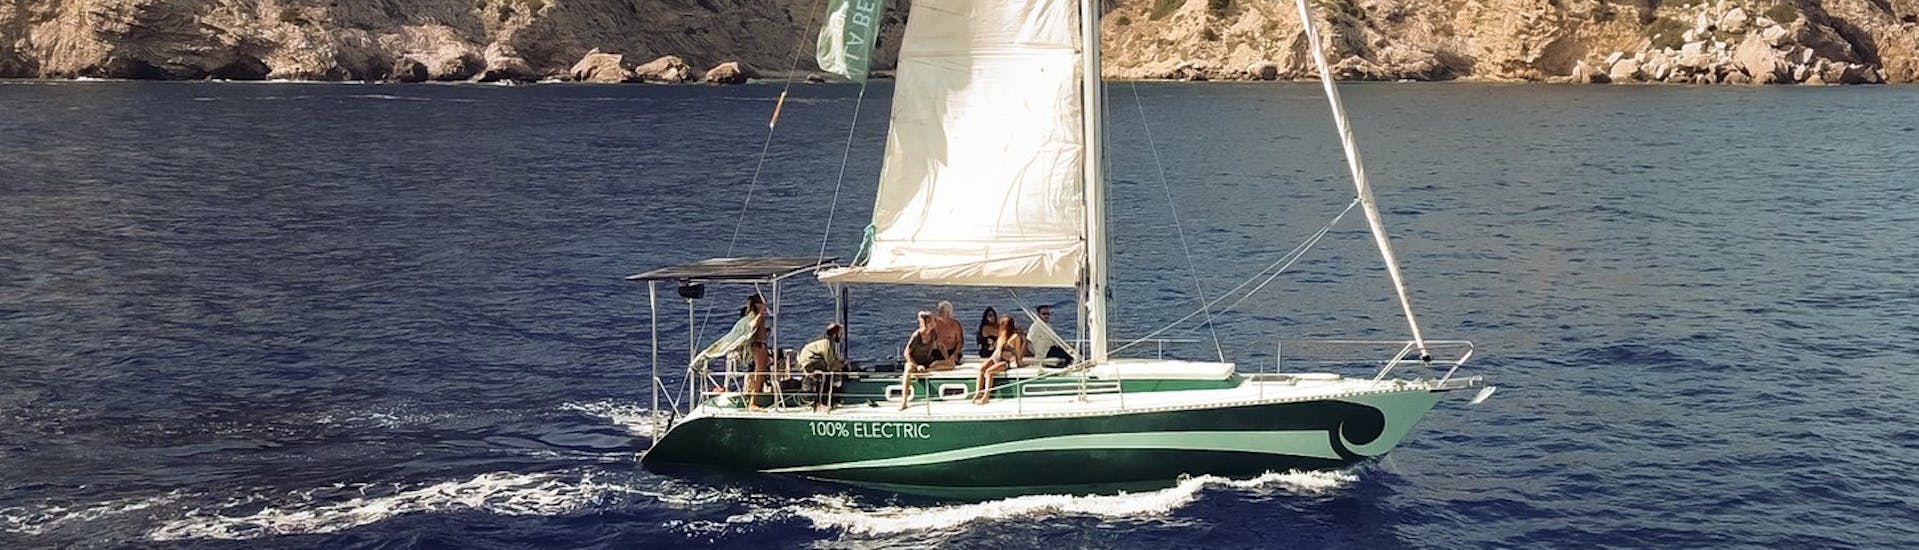 Nuestro monocasco navega por la costa durante la Excursión Privada en Barco al Atardecer por Ibiza con La Bella Verde Ibiza.